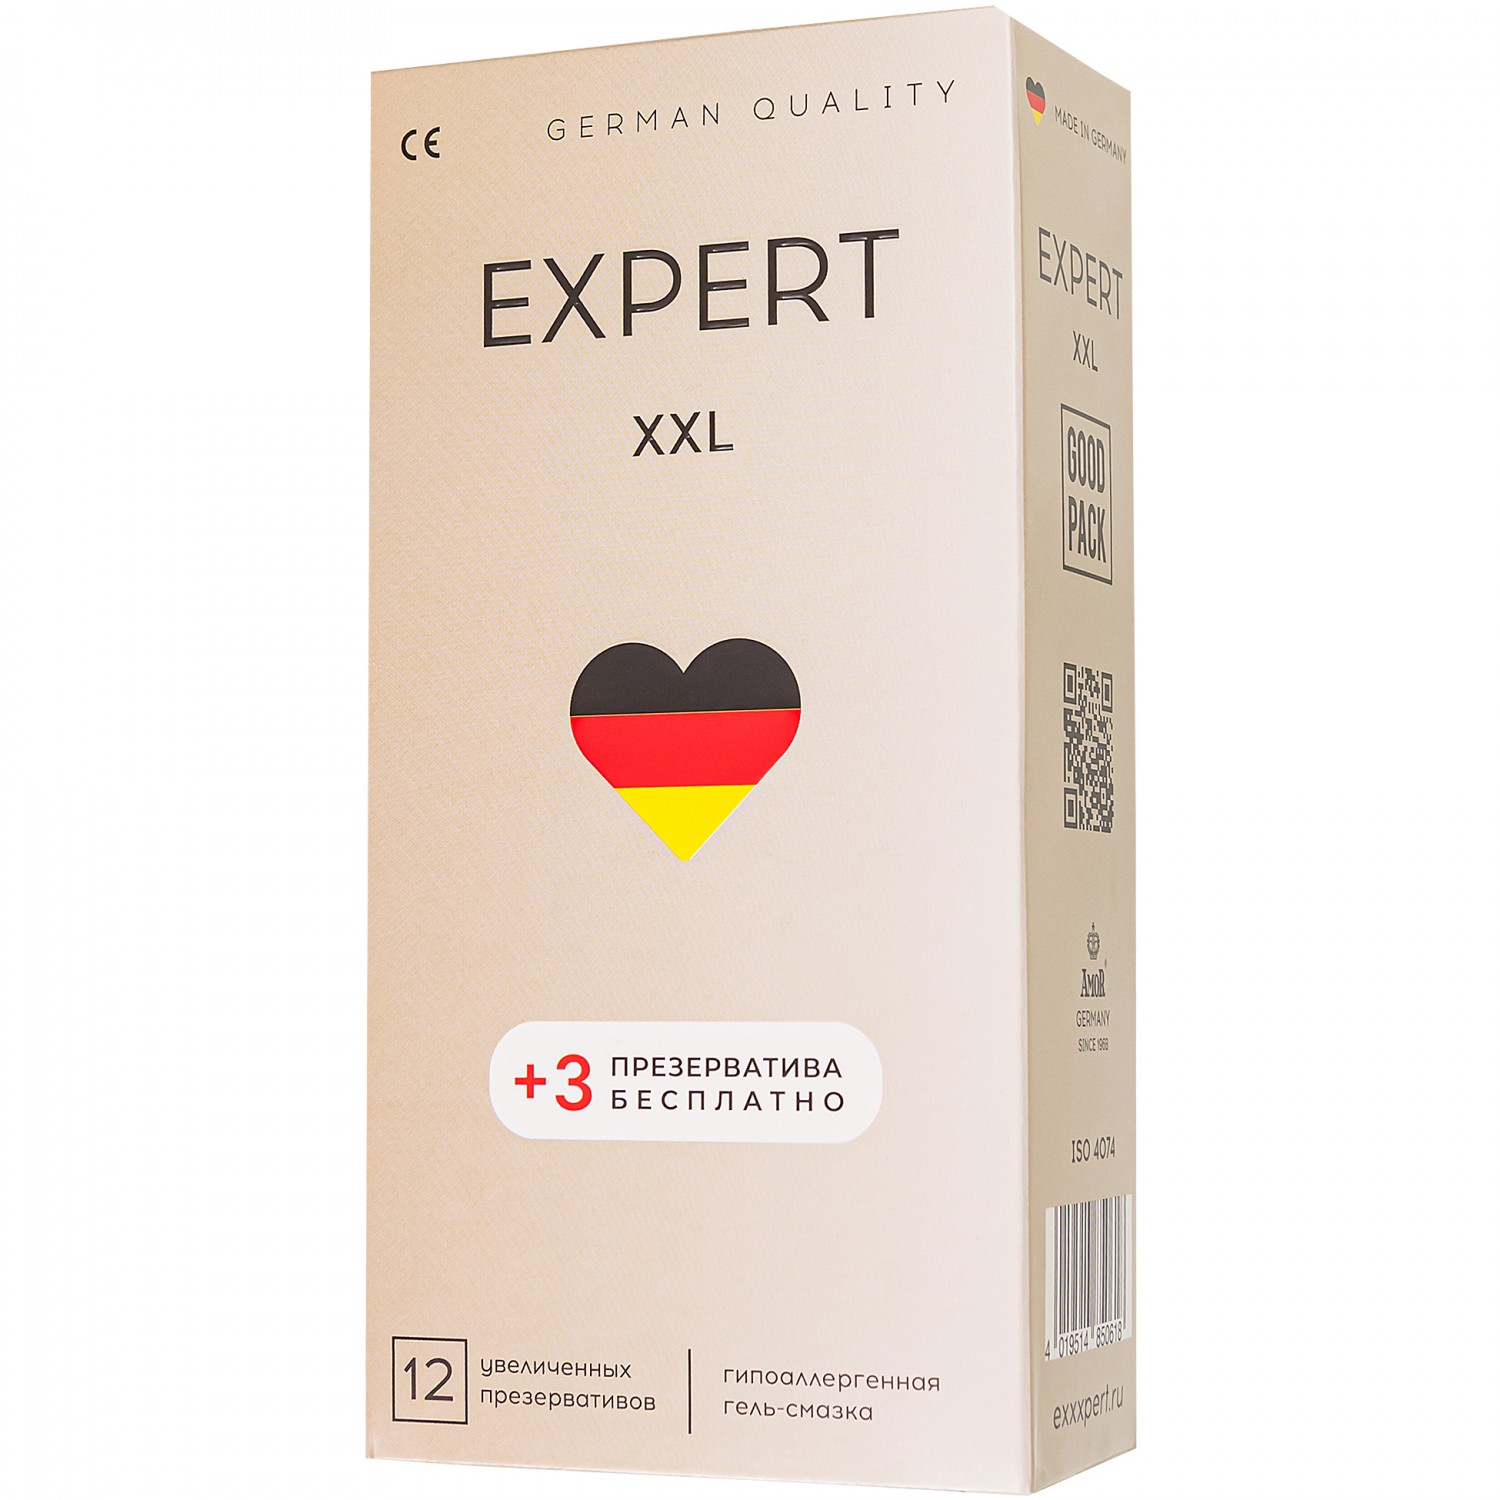 Презервативы EXPERT XXL GERMANY увеличенного размера,   12шт +(3 бесплатно)